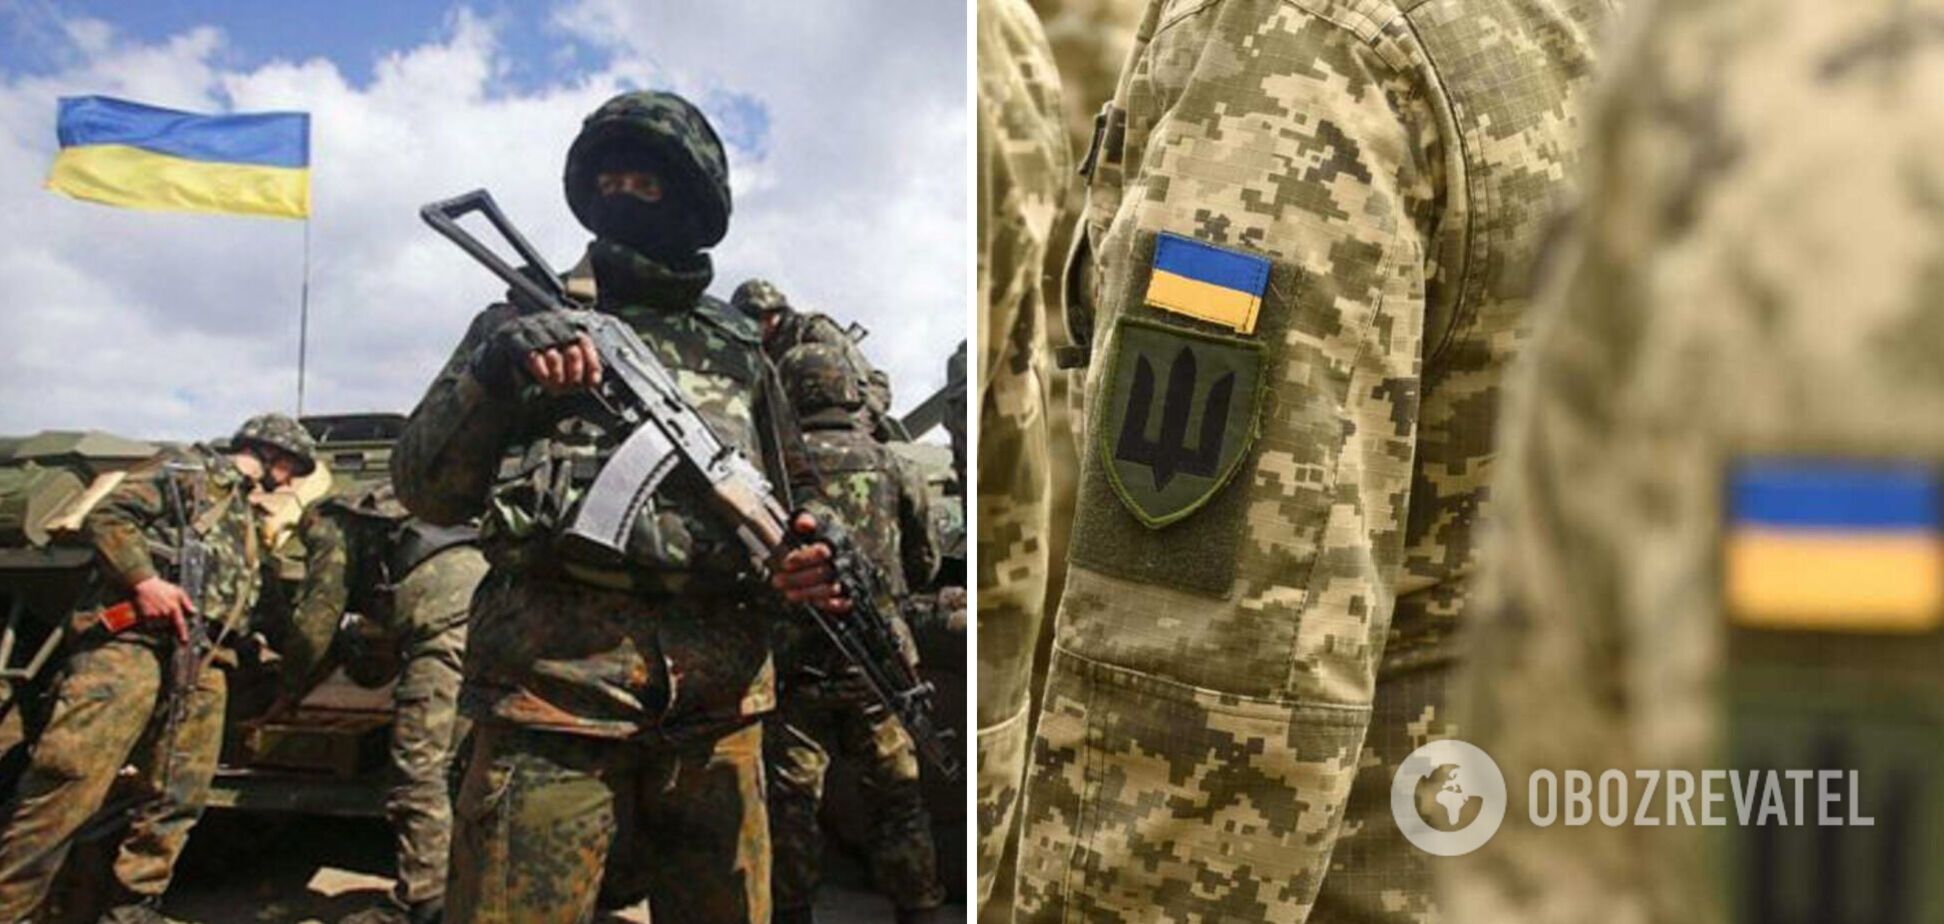 'Найкращі з найкращих хочуть взяти участь у битві світла проти пітьми': в Україну прибули перші ветерани спецназу Ізраїлю